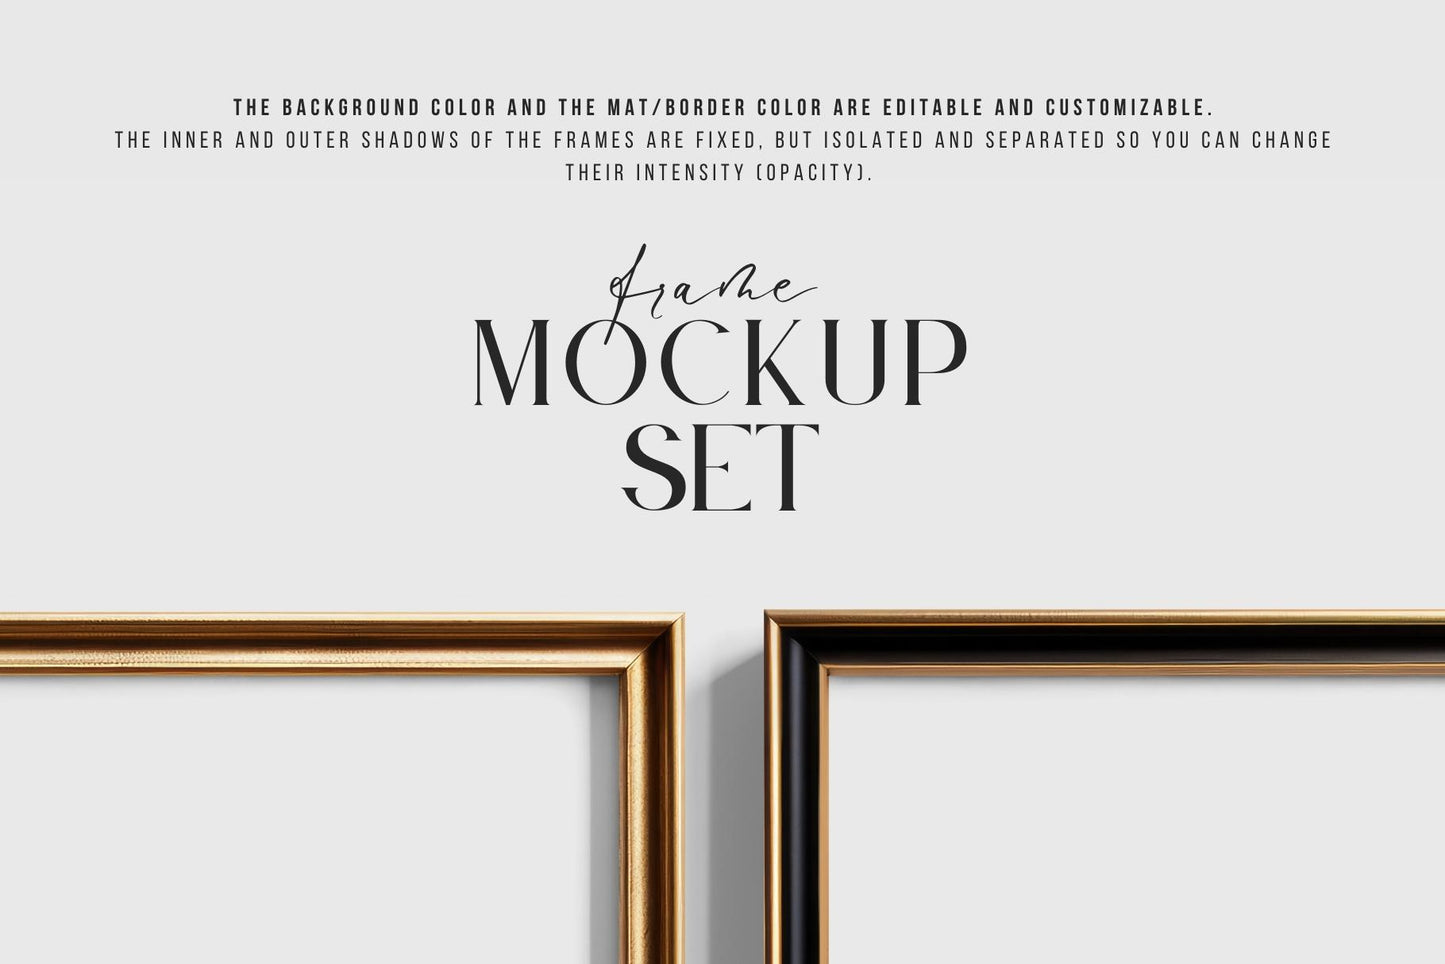 Metallic Frame Mockup Set of 2 Vertical Frames 5:7 | Elegant Black and Gold Frame Mockup Set | PSD Template + Transparent PNG Files